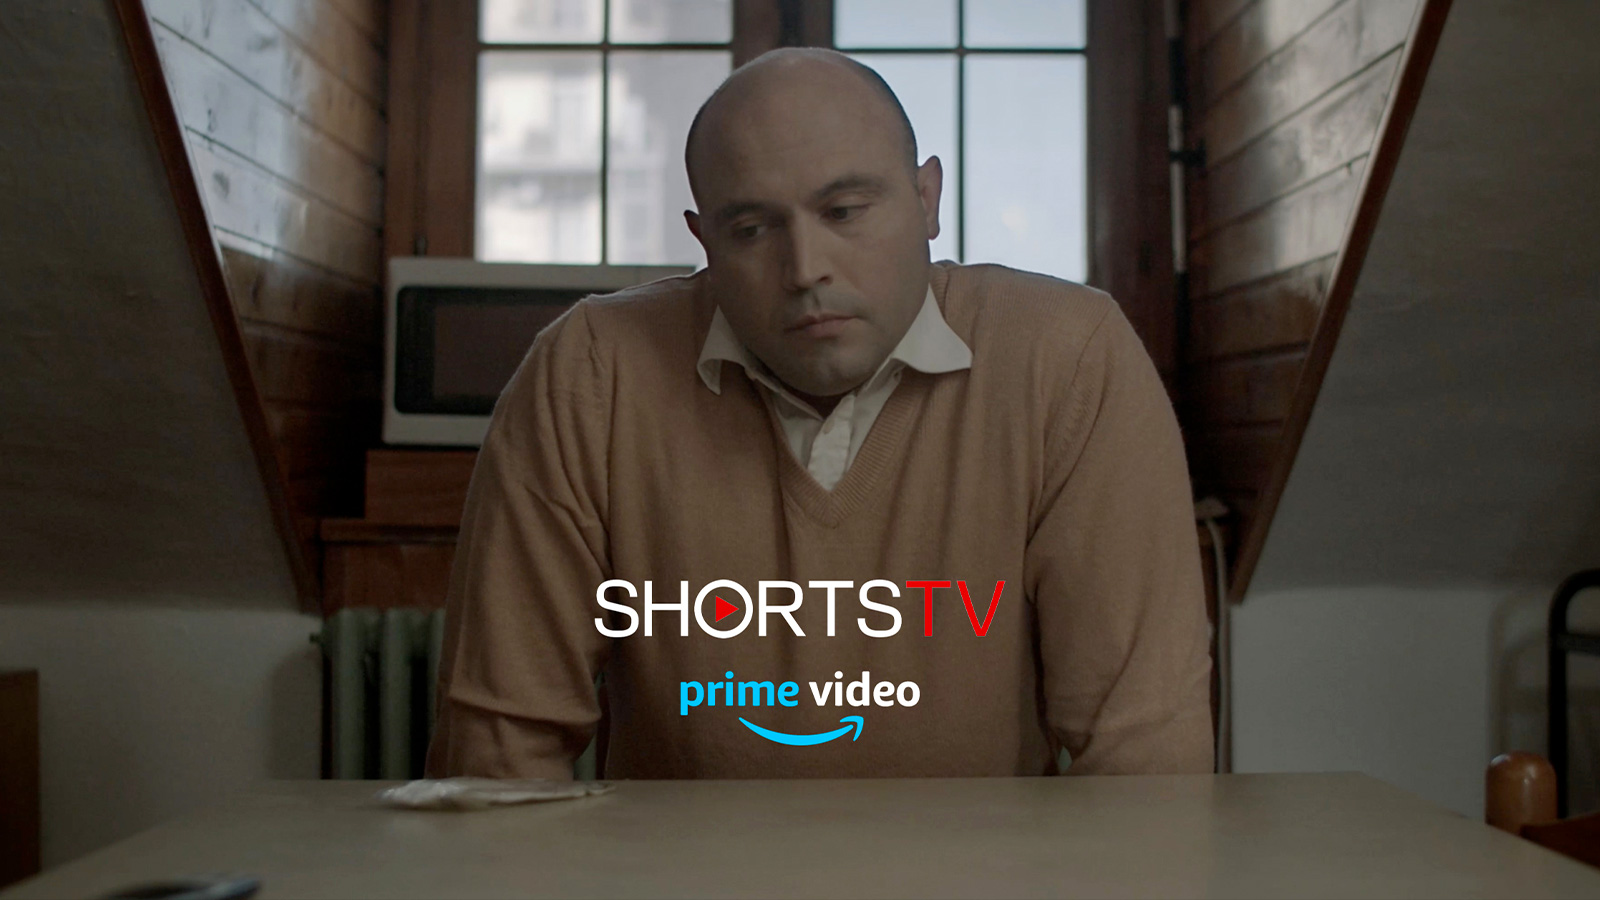 News "Onde" su ShortsTV di Amazon Prime Video